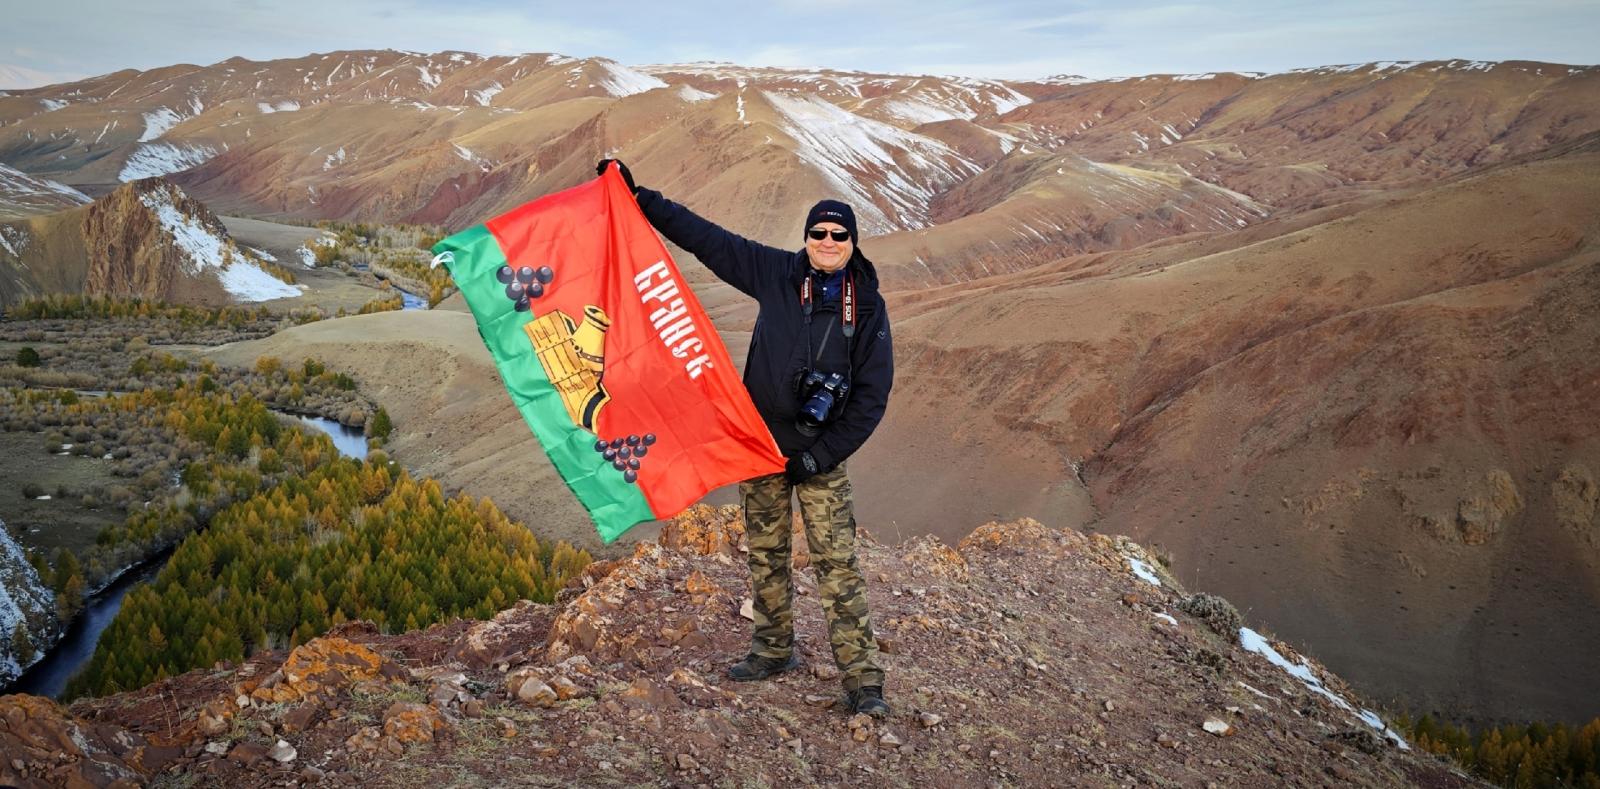 Фотограф Павел Стрельцов поднял флаг Брянской области на одной из вершин Алтая